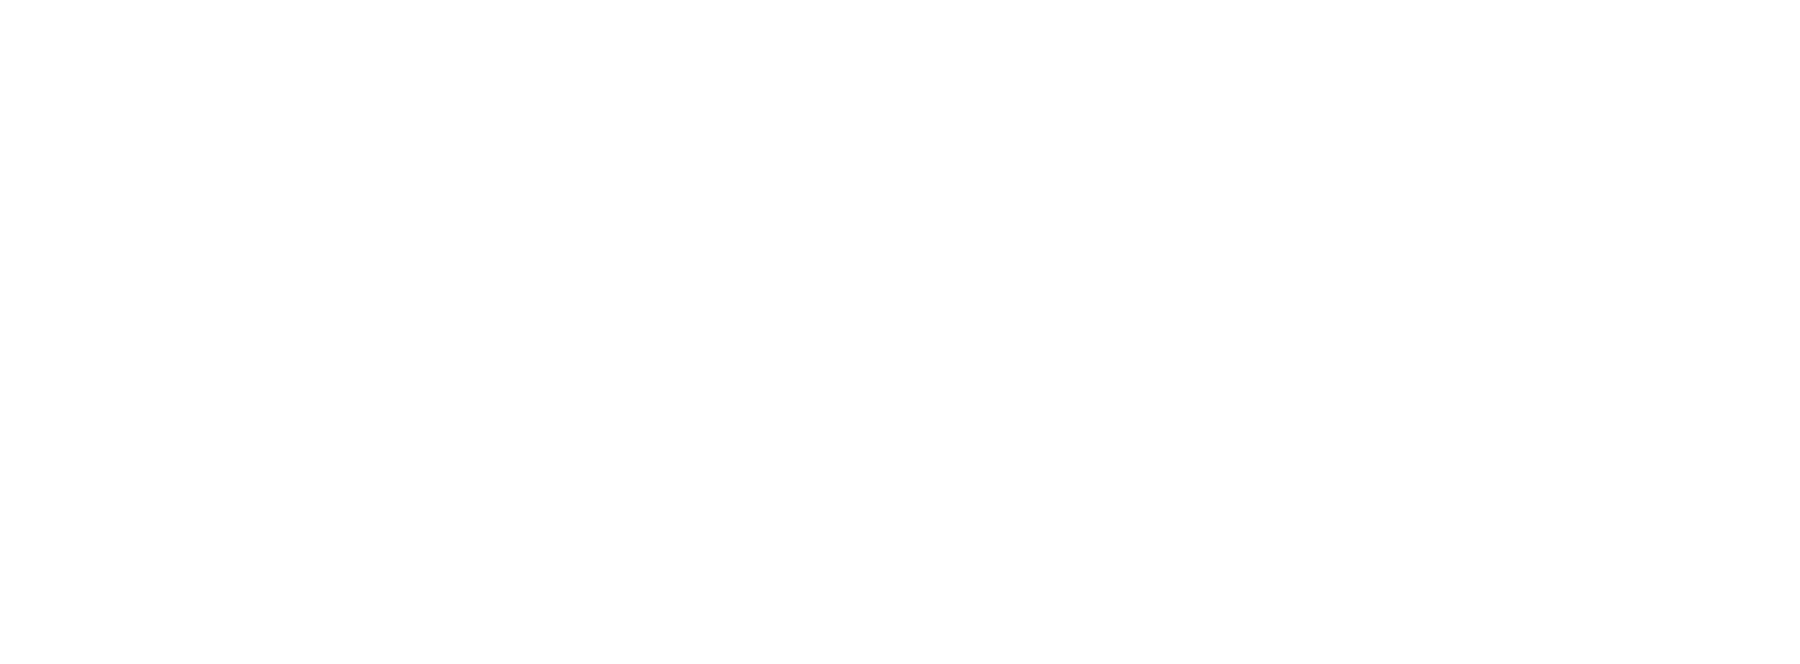 IBM Black Logo - IBM logos PNG image free download, IBM logo PNG